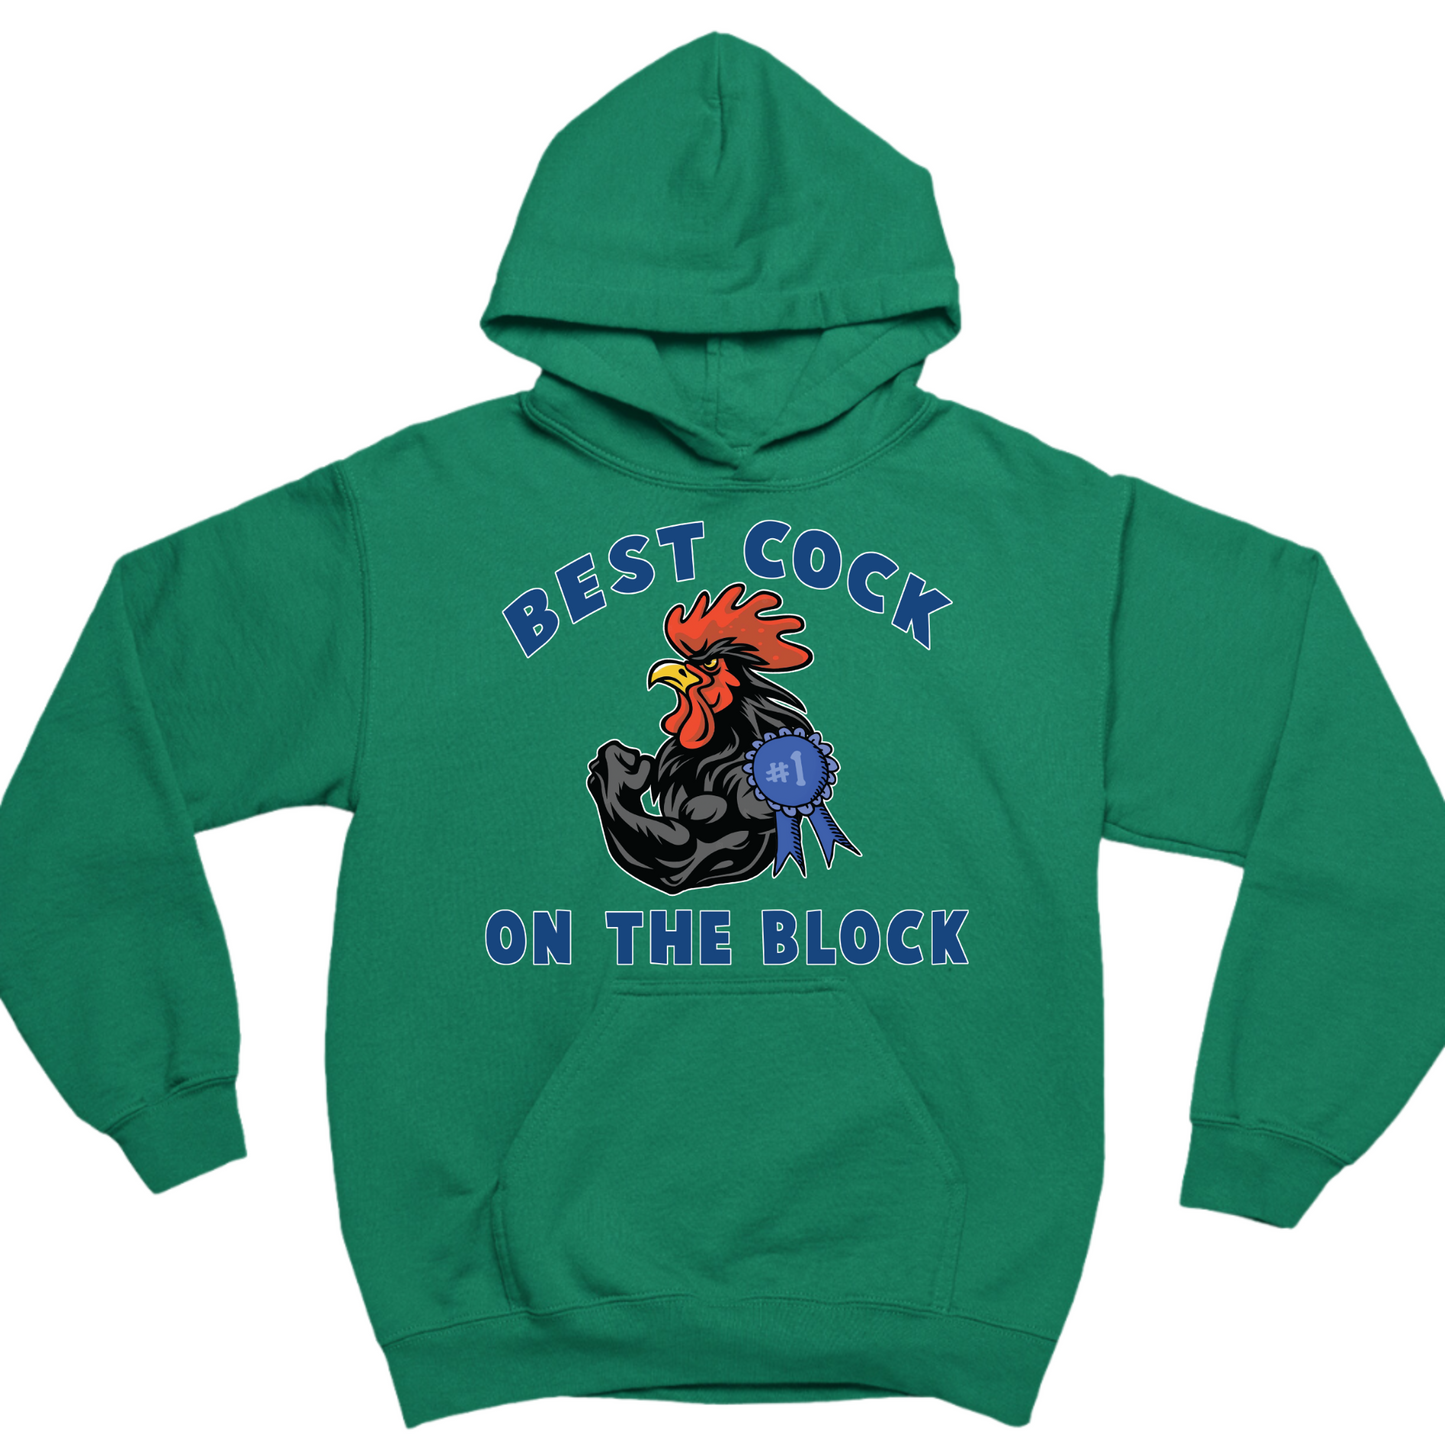 Best Cock On The Block Hoodie